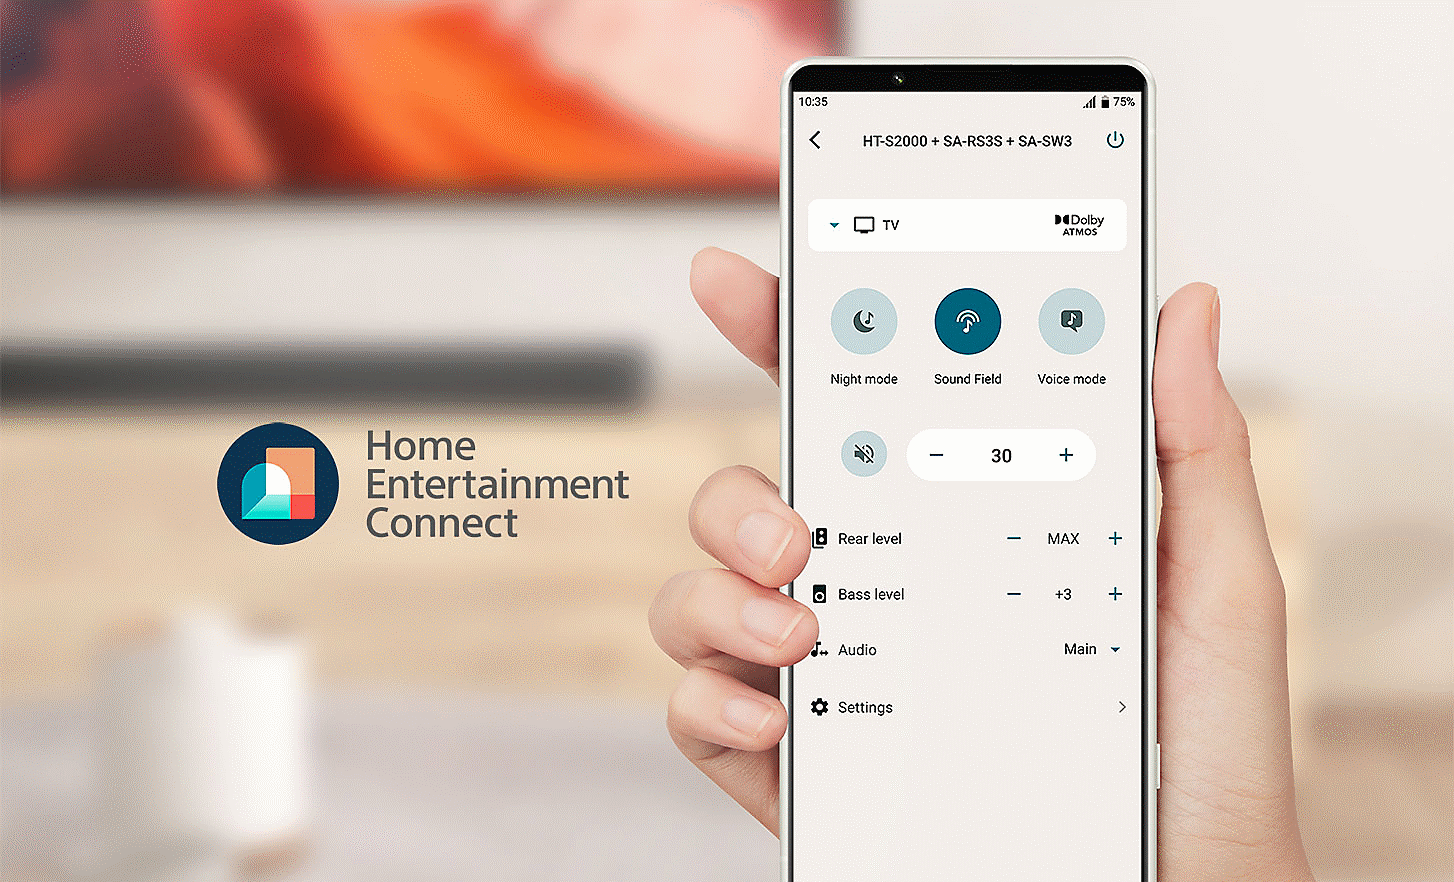 Kuva kädestä pitelemässä matkapuhelinta, jonka näytössä näkyy asetusvalikko, Home Entertainment Connect -logo näkyy vasemmalla